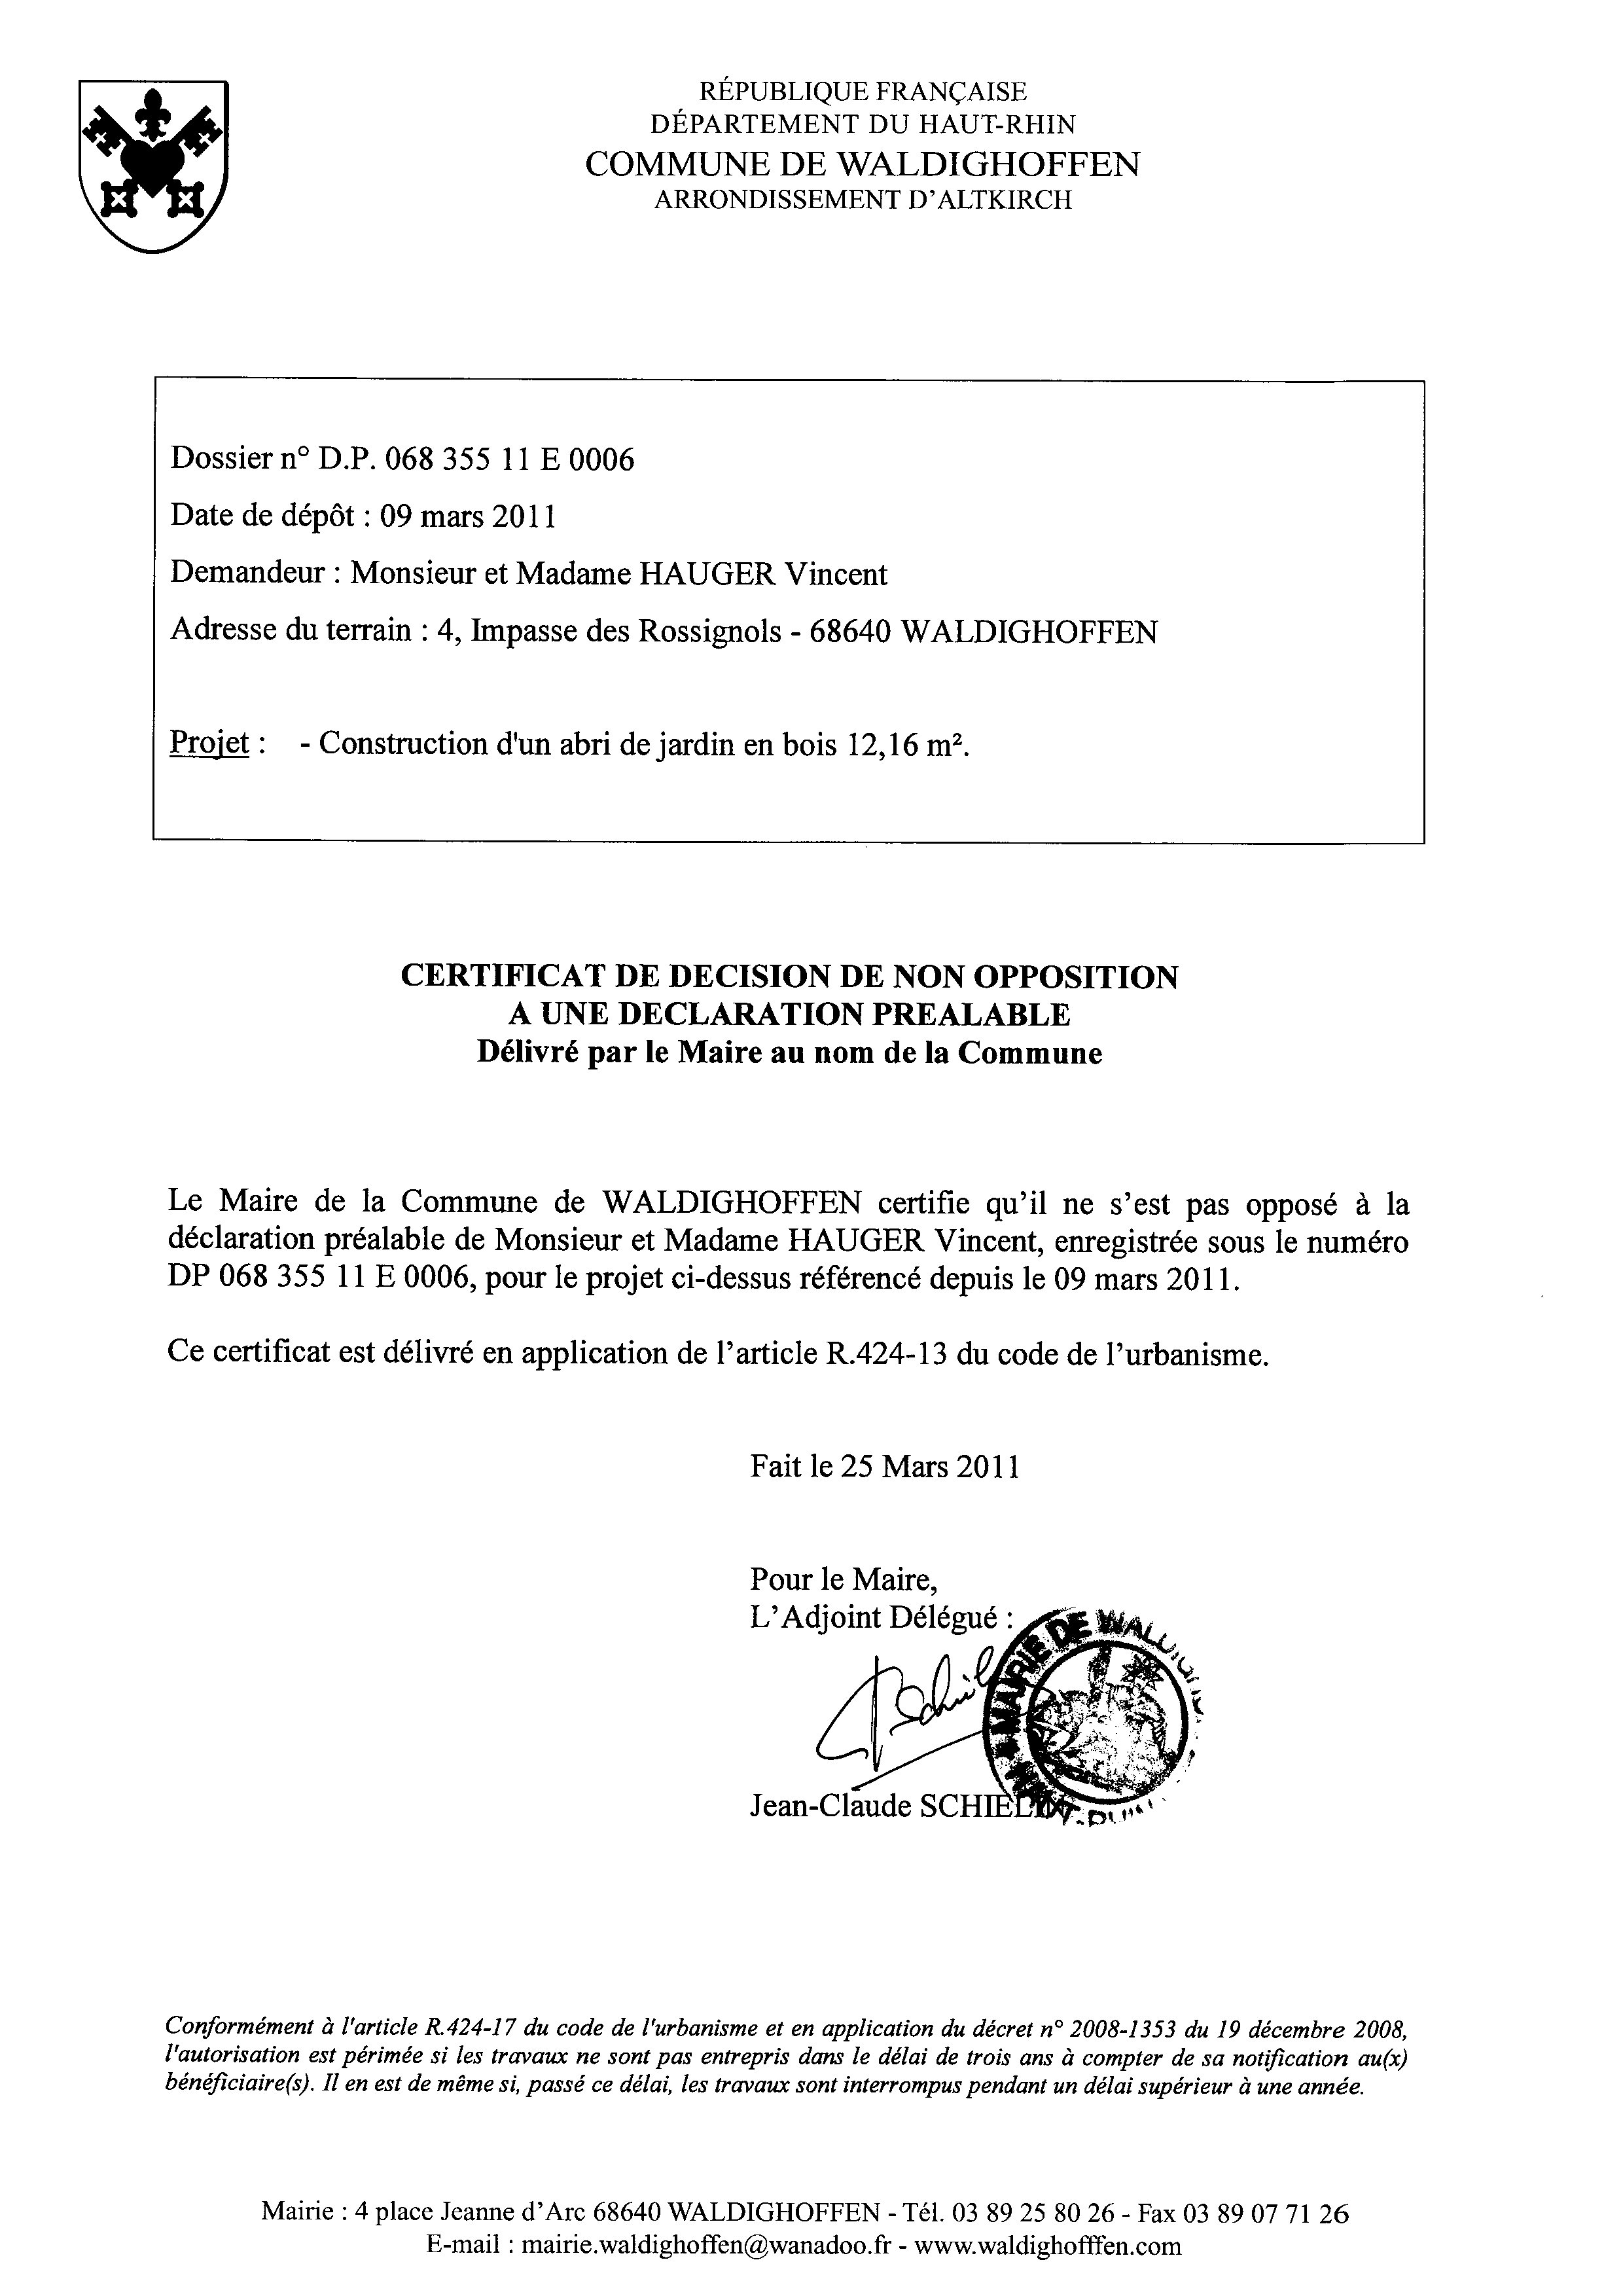 Non-opposition à une déclaration préalable n°11E0006 - M. et Mme HAUGER Vincent